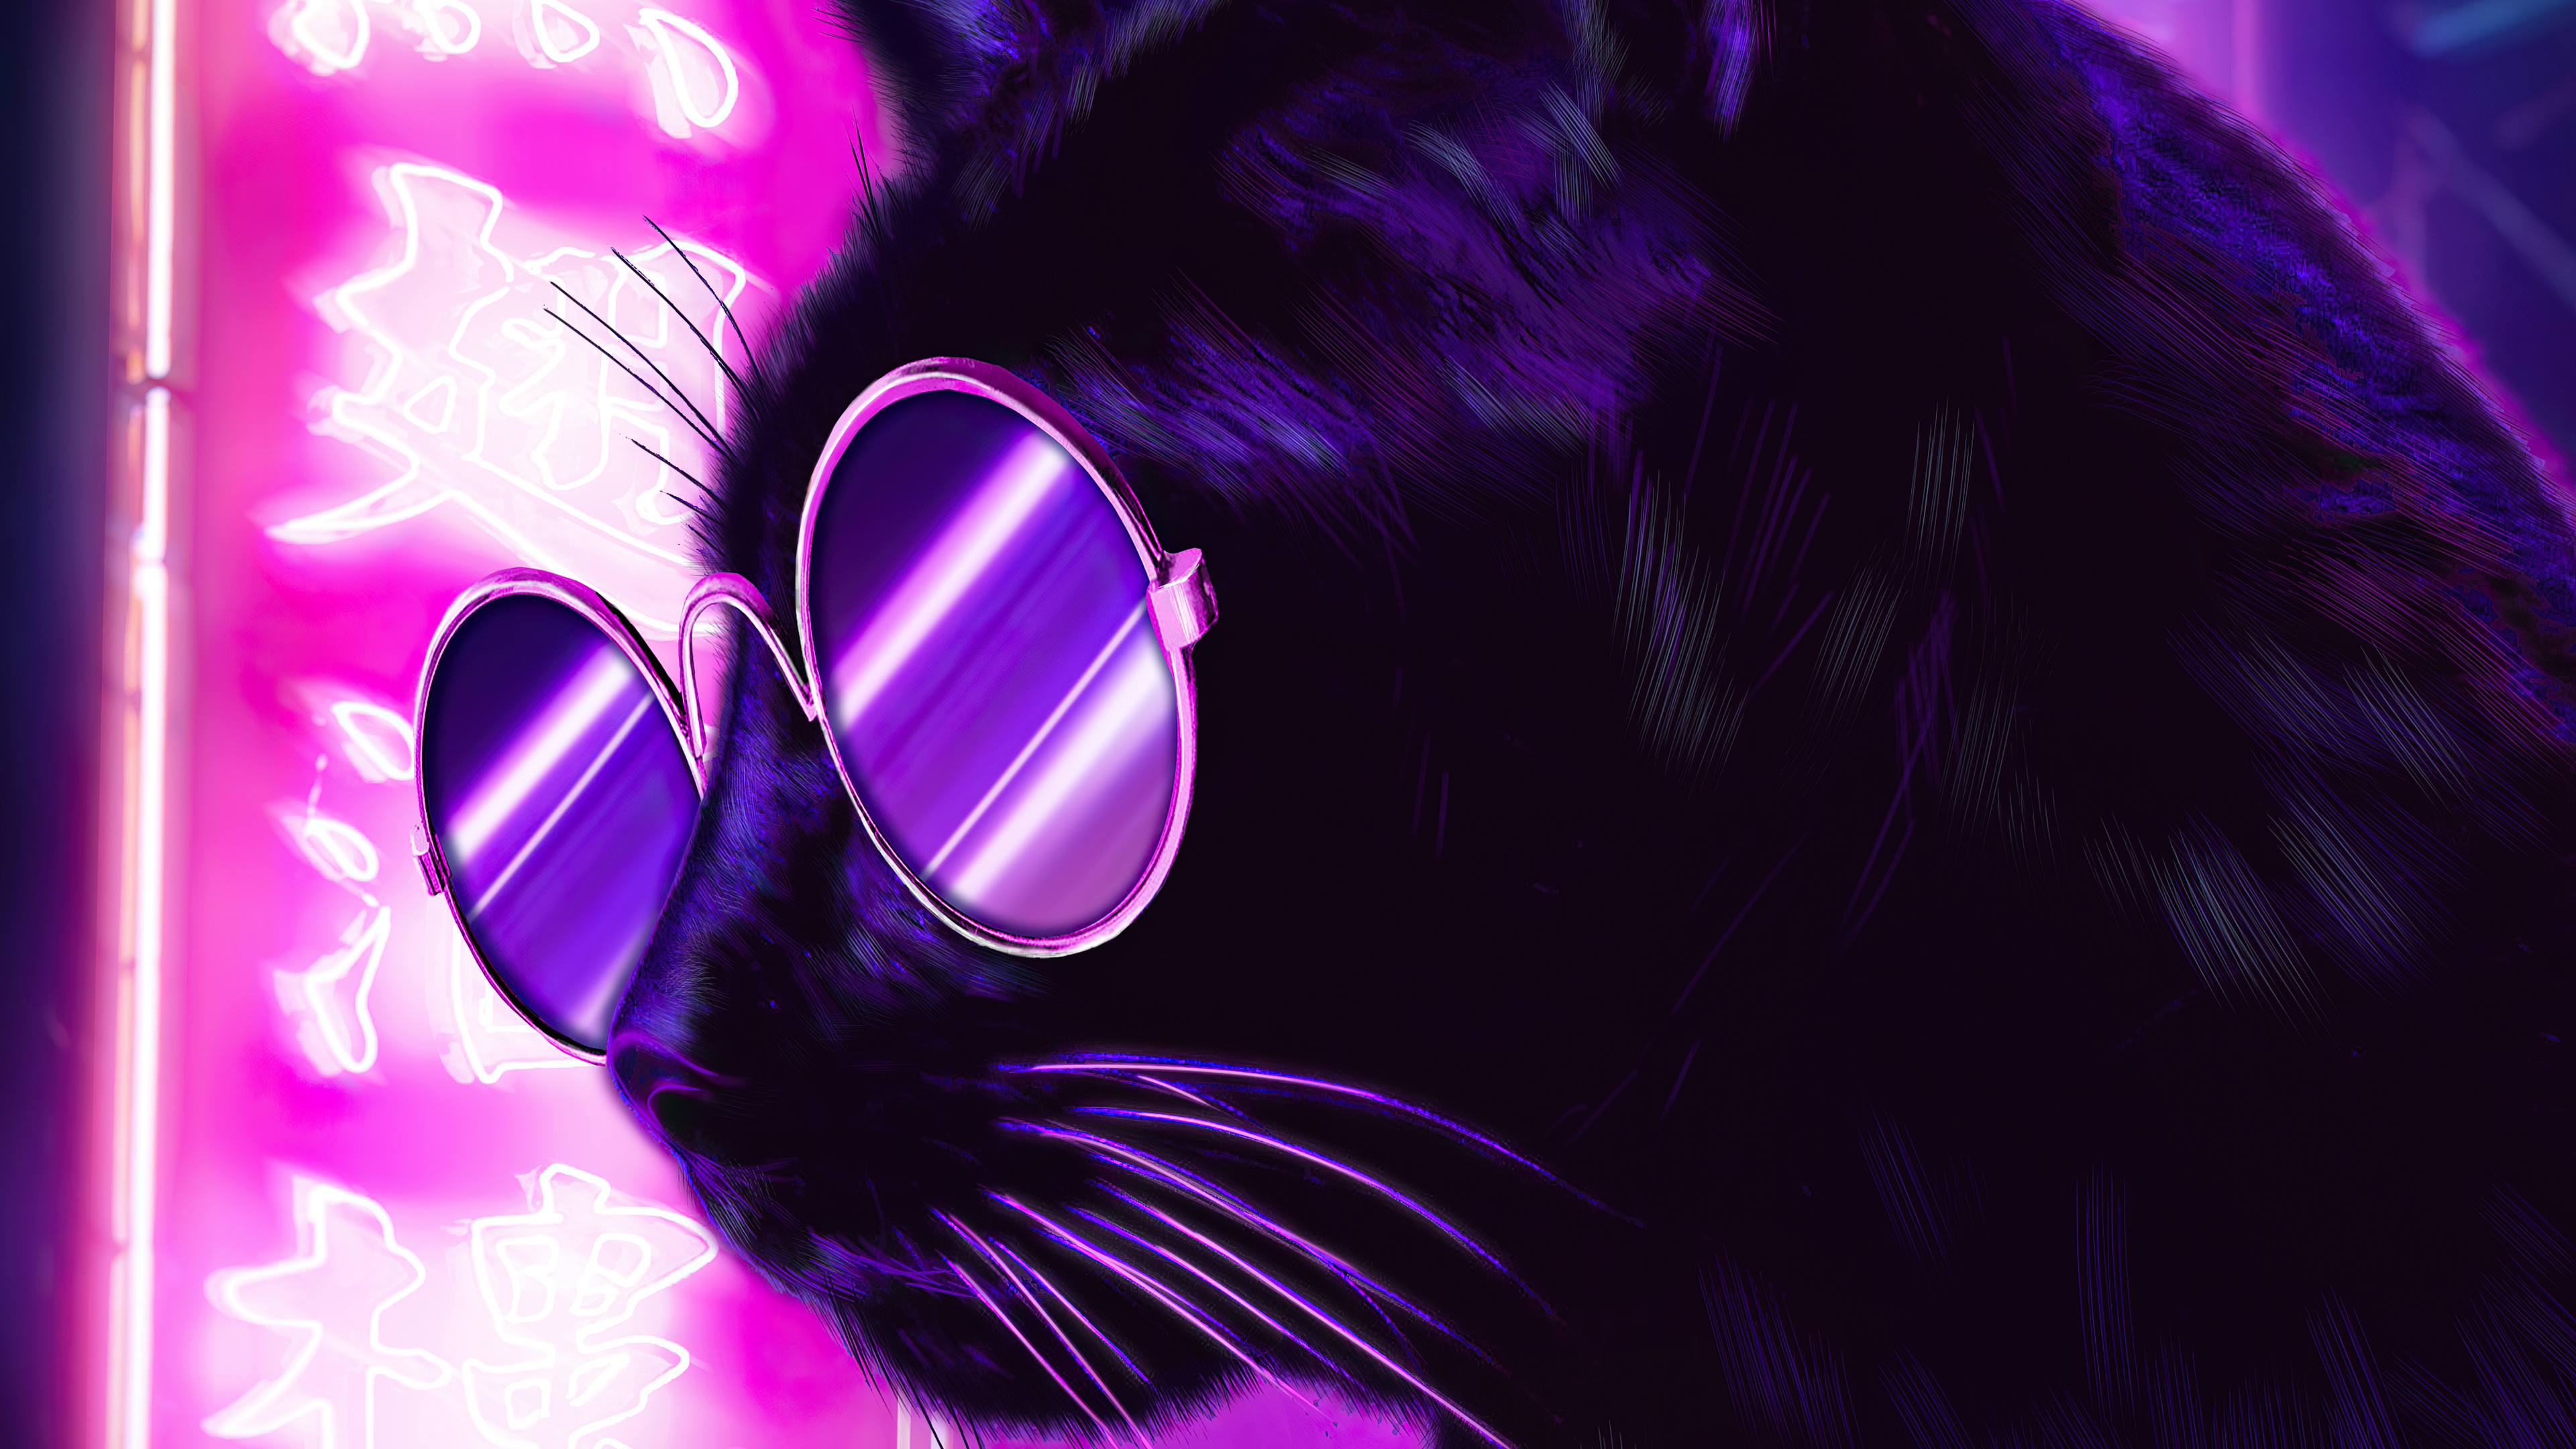 Bạn là fan của mèo kính? Bạn muốn có một hình nền đầy đủ sự độc đáo và ấn tượng? Hãy đến với chúng tôi để có thể tải về hình nền Mèo kính màu tím đêm neon với chất lượng 4K HD và được sáng tạo bởi các nghệ sỹ tài ba.